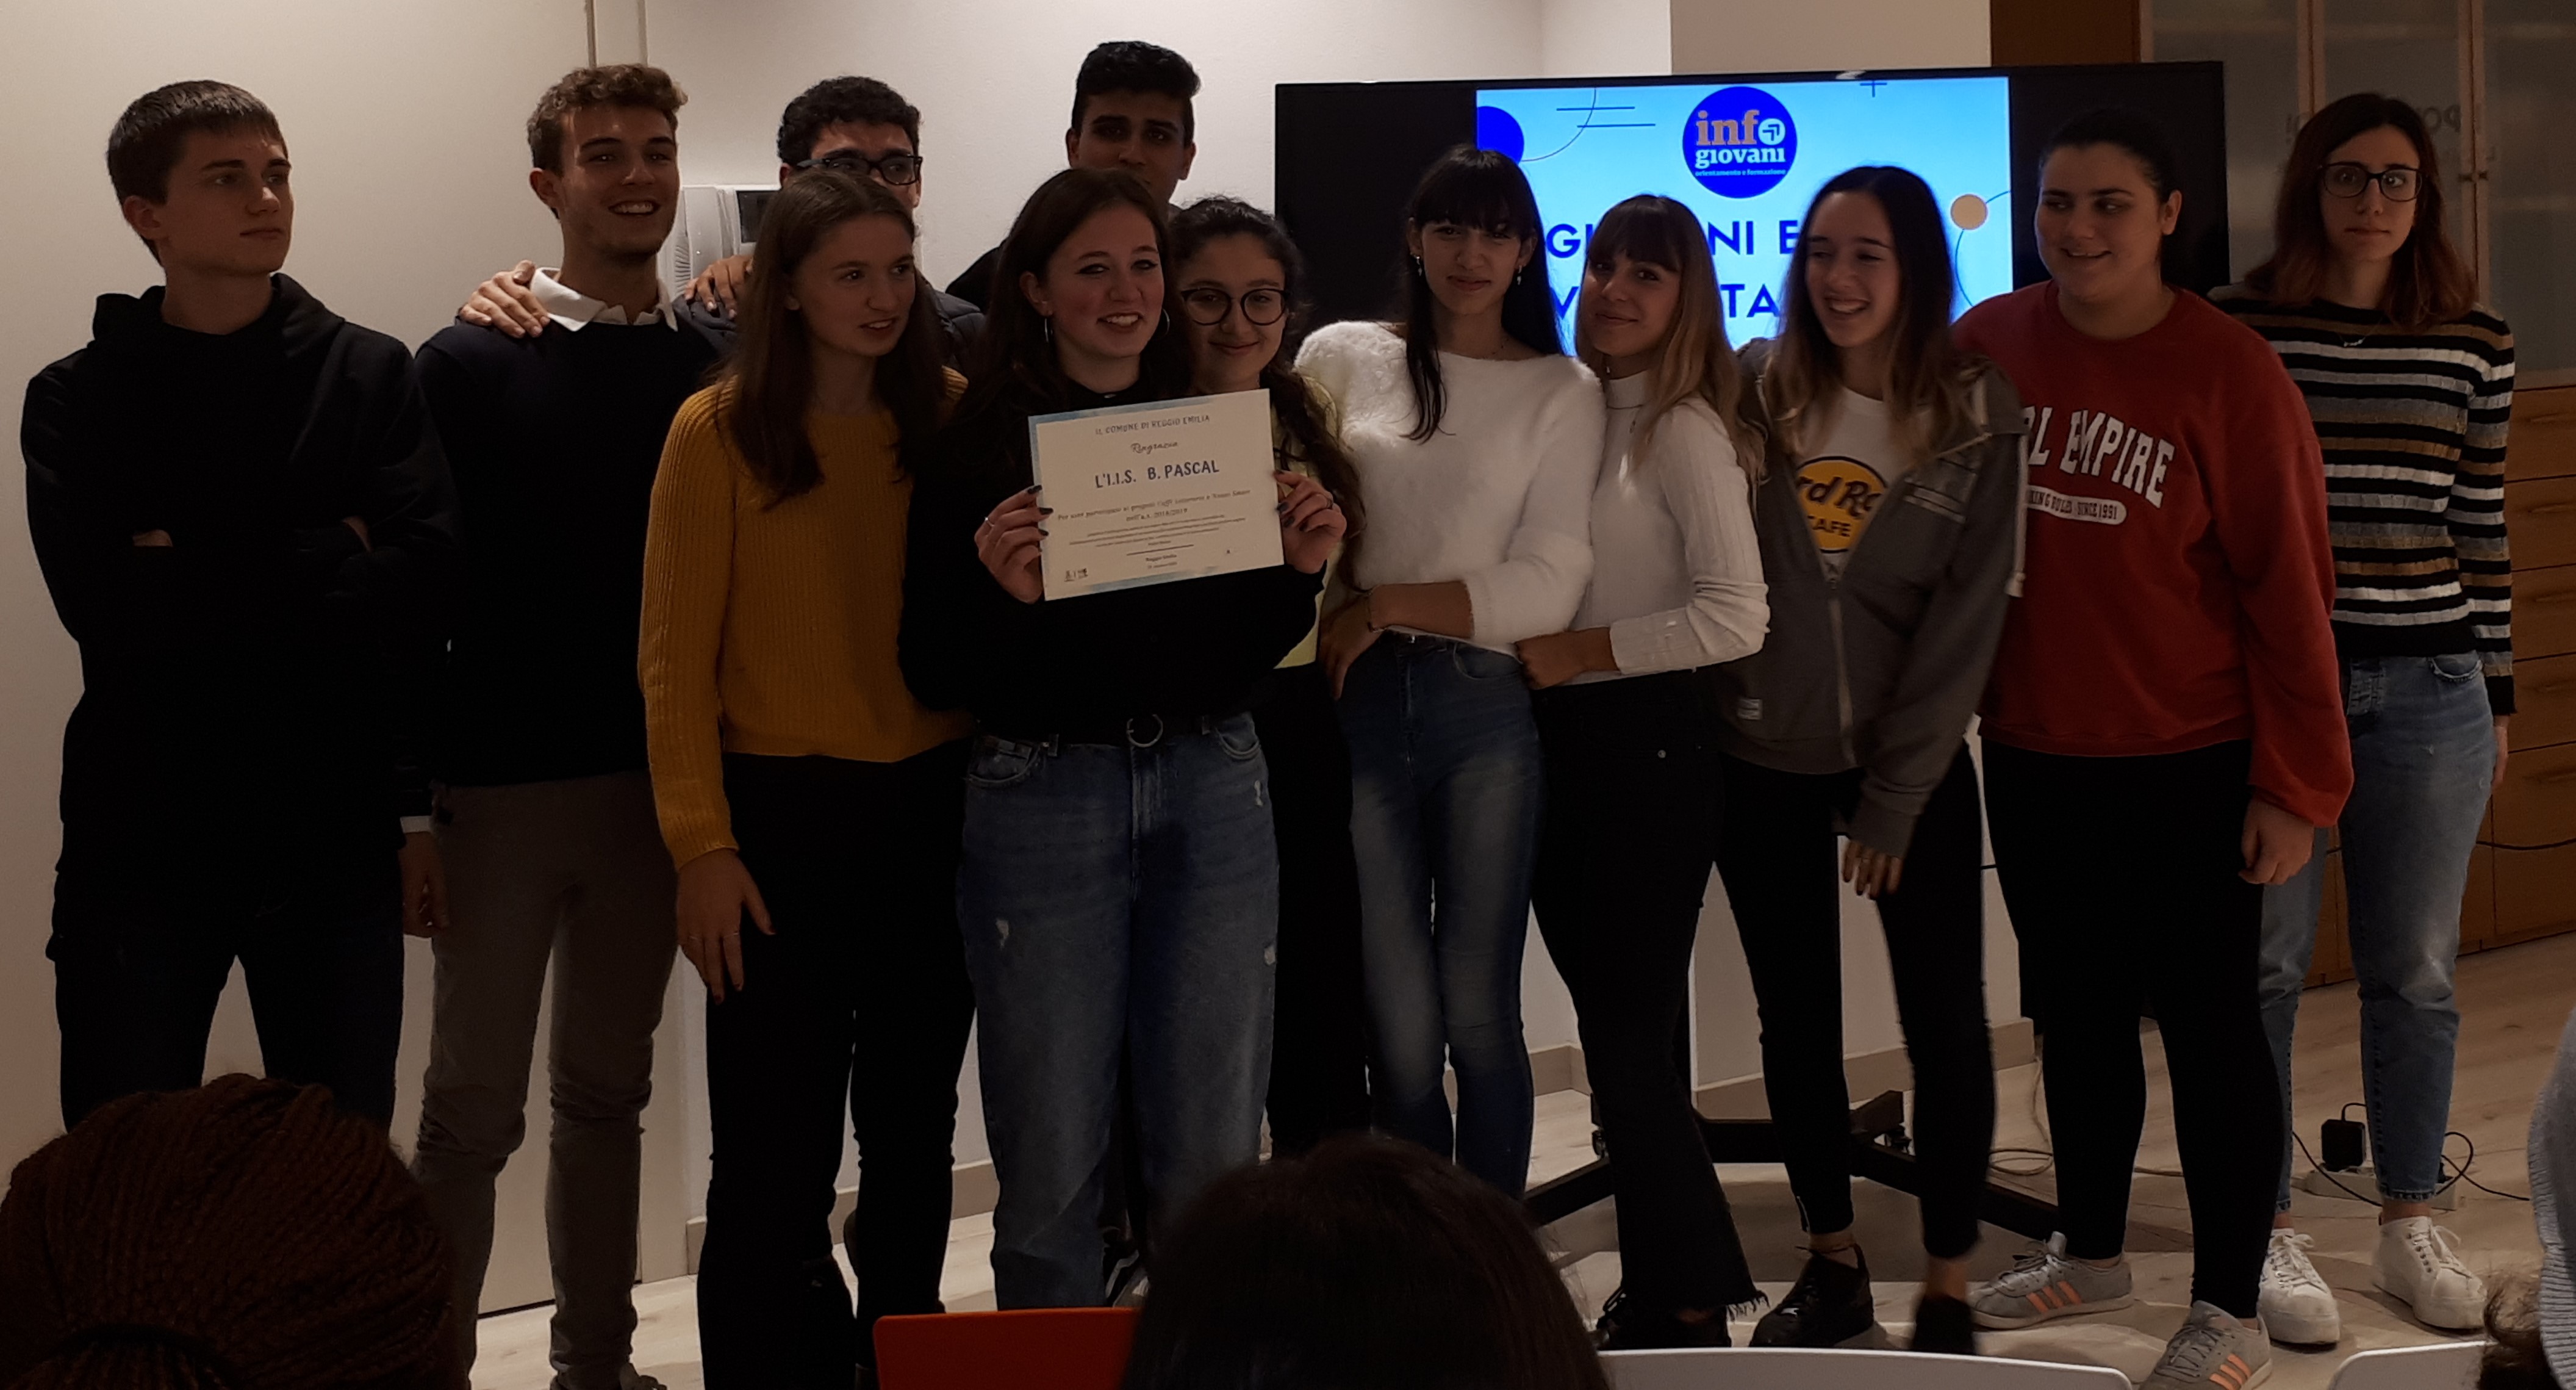 Studenti premiati dal comune di Reggio Emilia